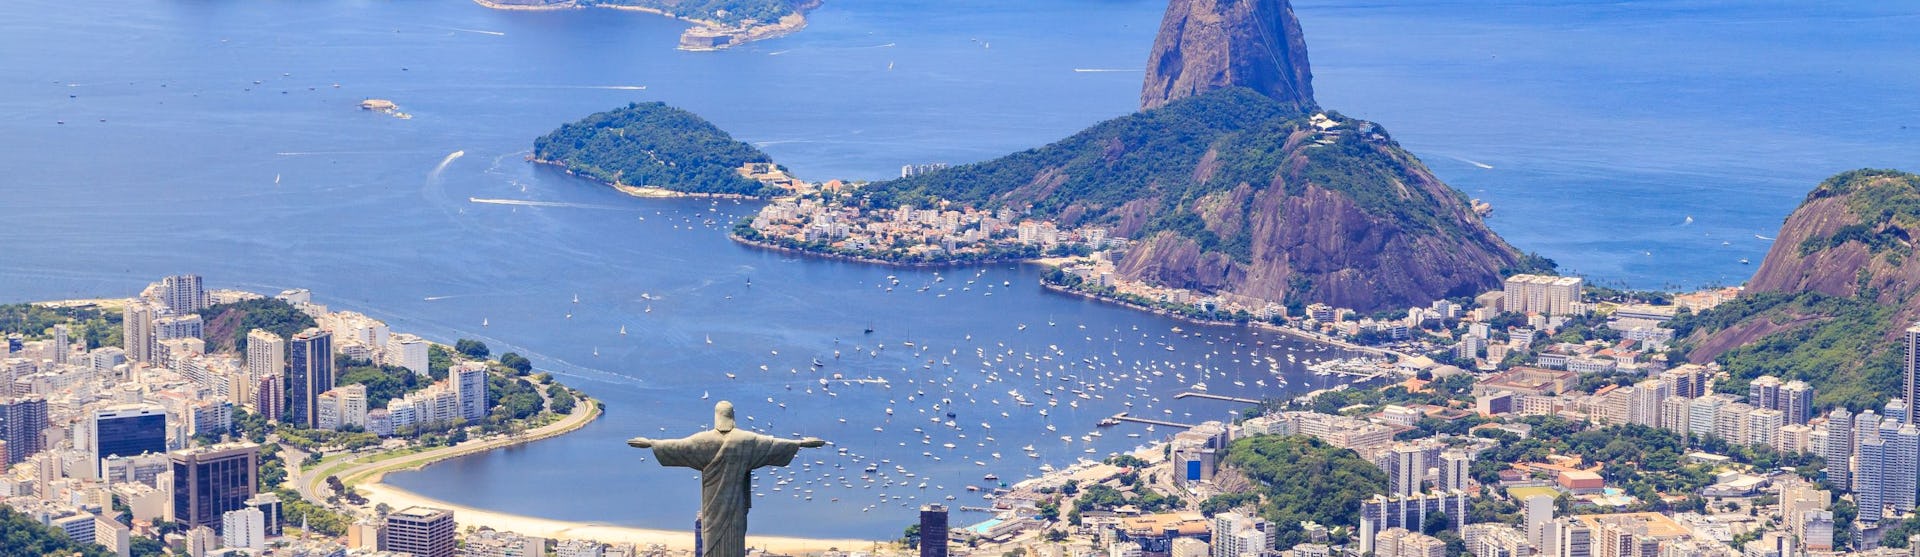 Rio-de-Janeiro-Brazil-South-America